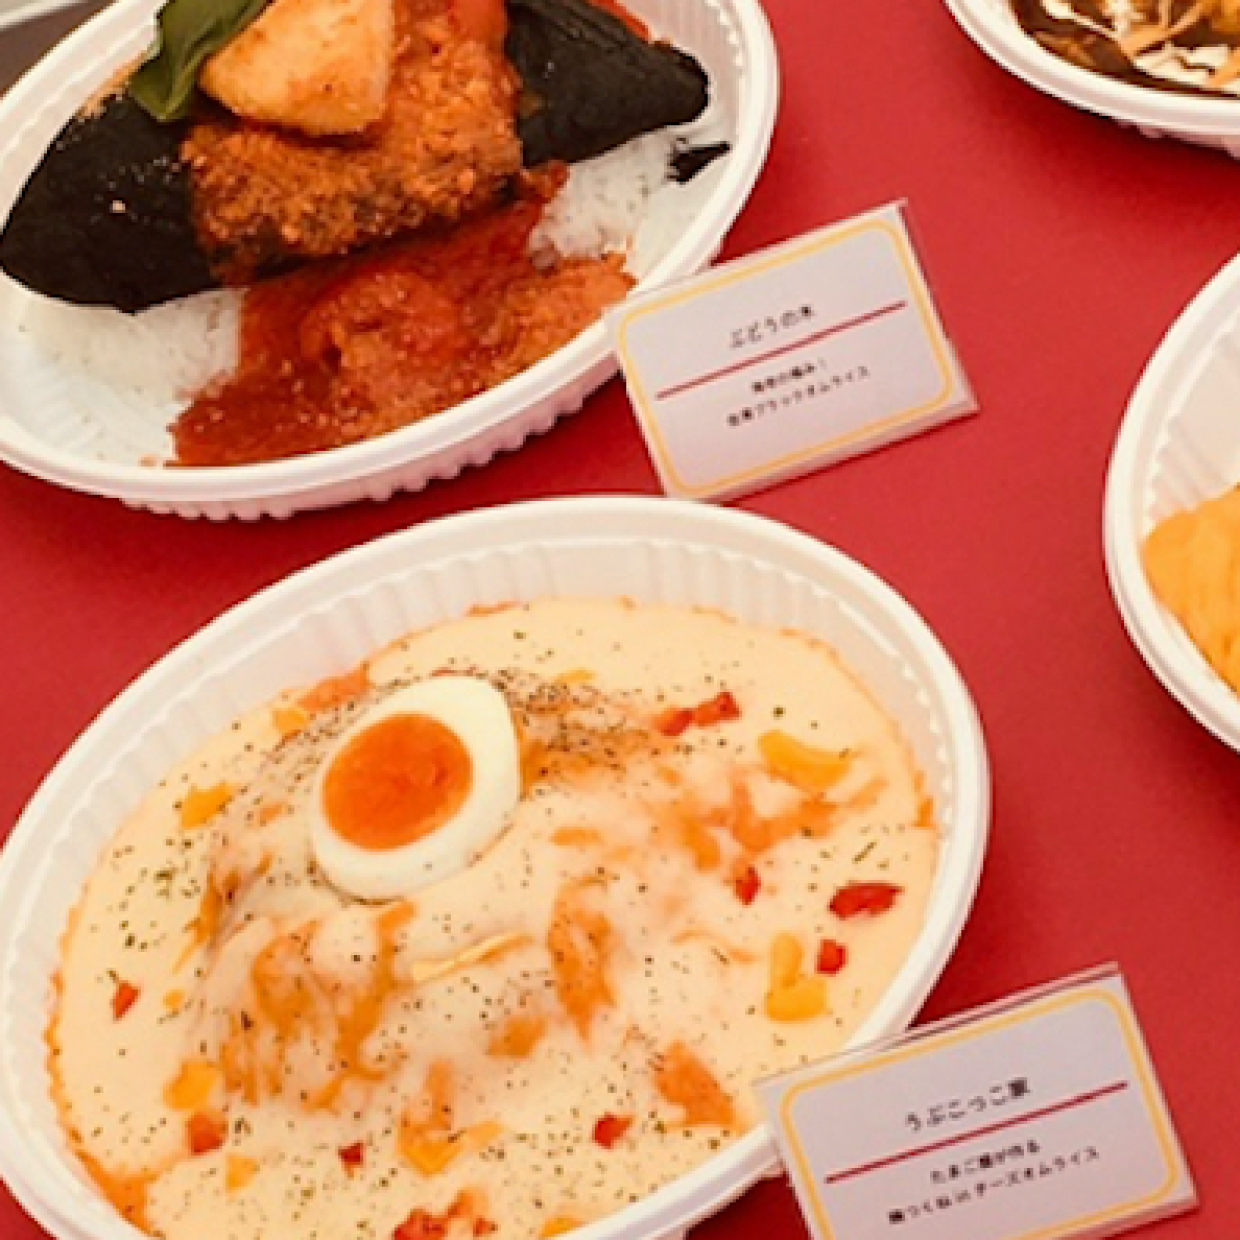  “日本一”のオムライスを決めよう！楽しく、おいしく食べ比べ「カゴメ オムライススタジアム 2019」 